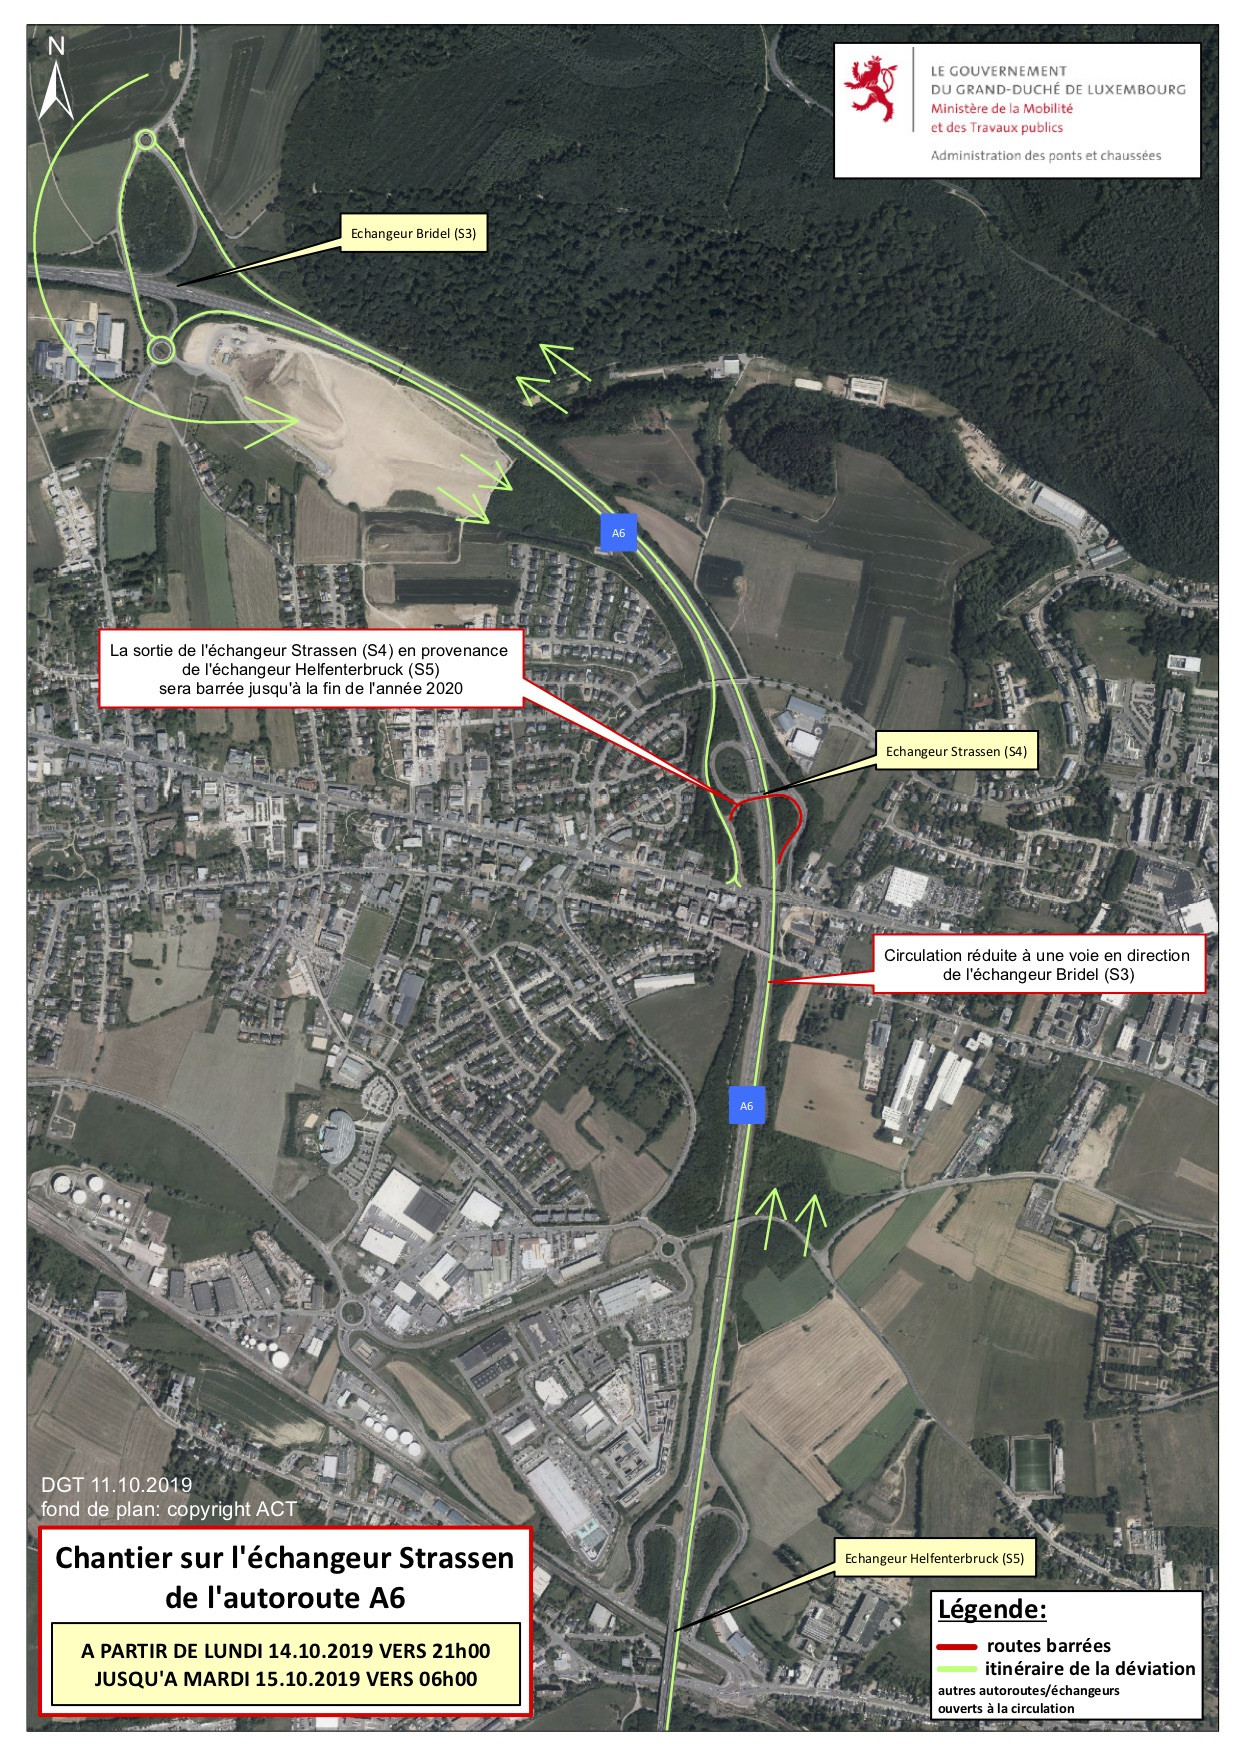 La bretelle de sortie de l’échangeur Strassen en provenance de l’échangeur Helfenterbruck sera fermée à la circulation jusqu’à fin 2020. (Photo: Administration des ponts et chaussées)